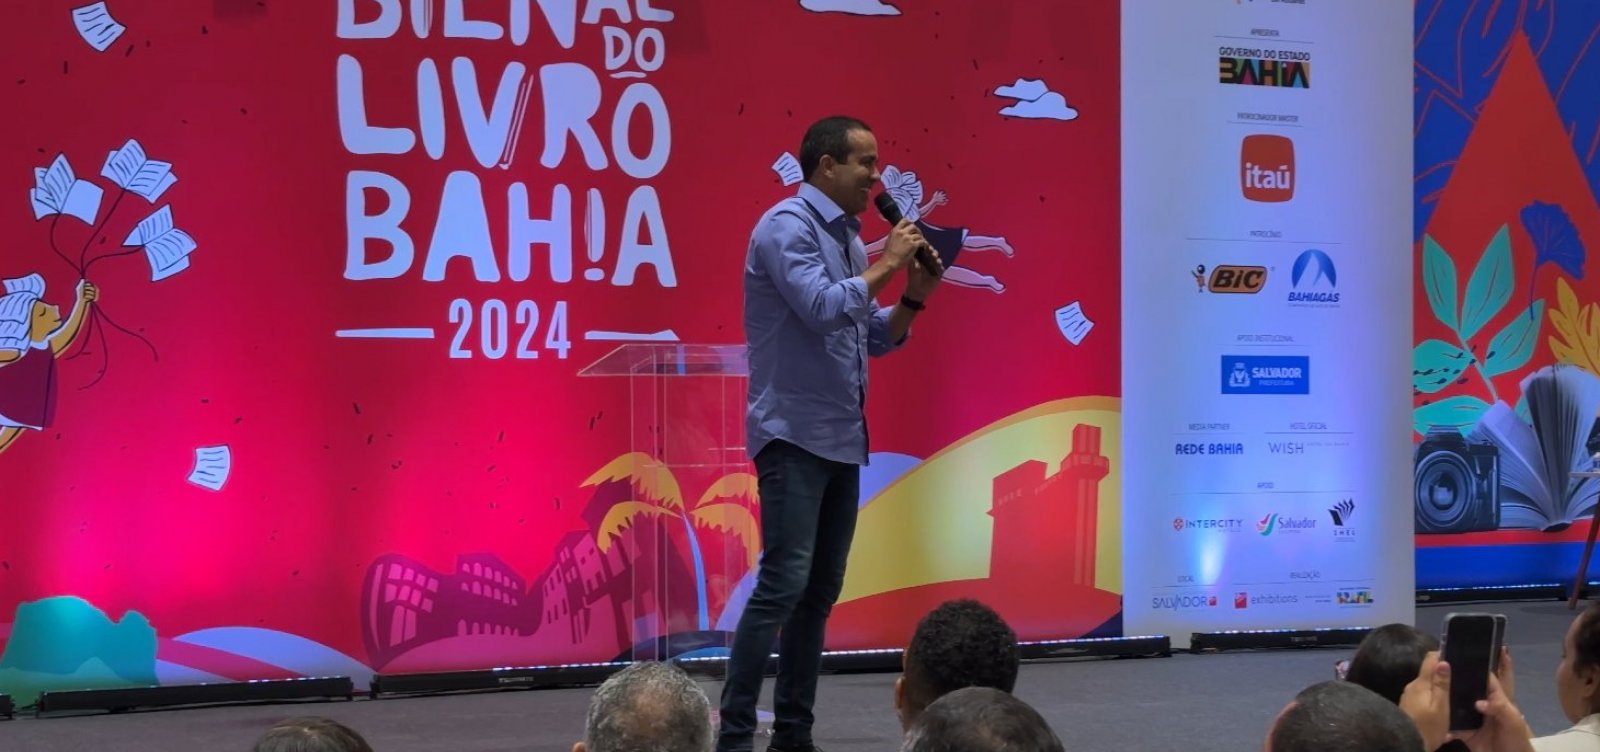 Prefeito Bruno Reis participa de abertura da Bienal do Livro 2024: "Salvador será o palco principal do Brasil para a literatura"